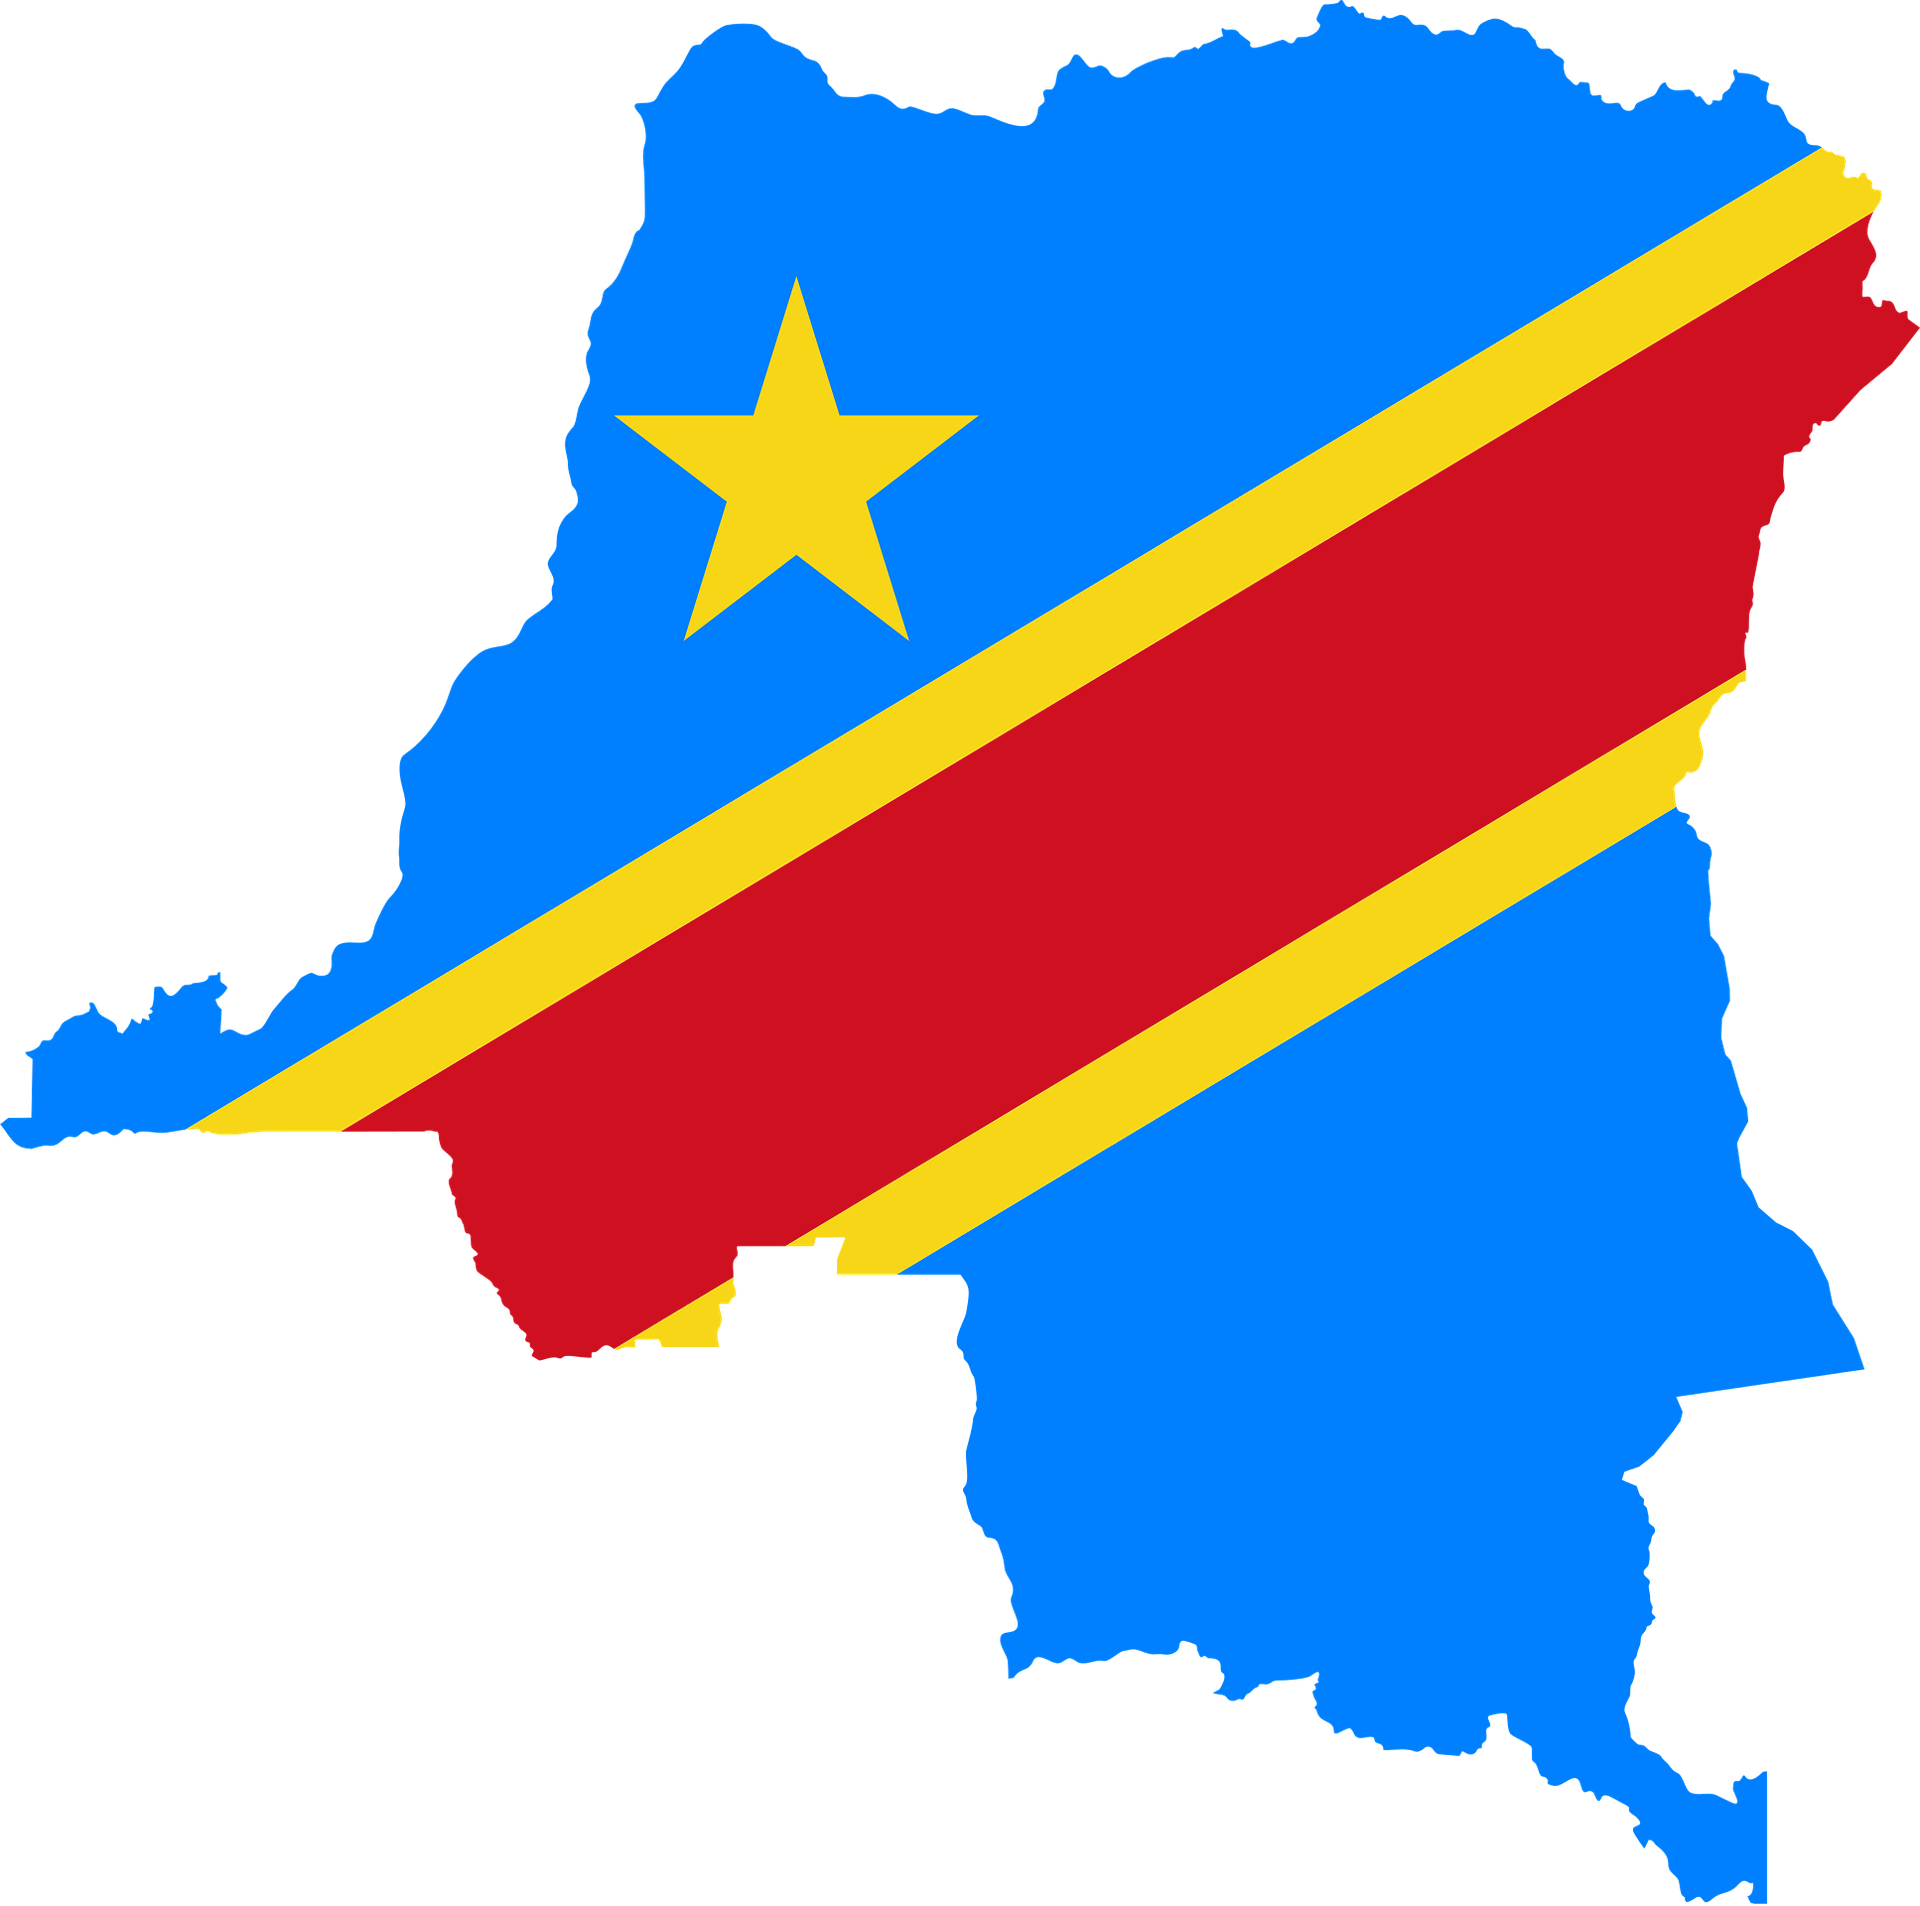 Declarados 3 días de luto nacional en la República Democrática del Congo tras un temporal que deja 120 fallecidos